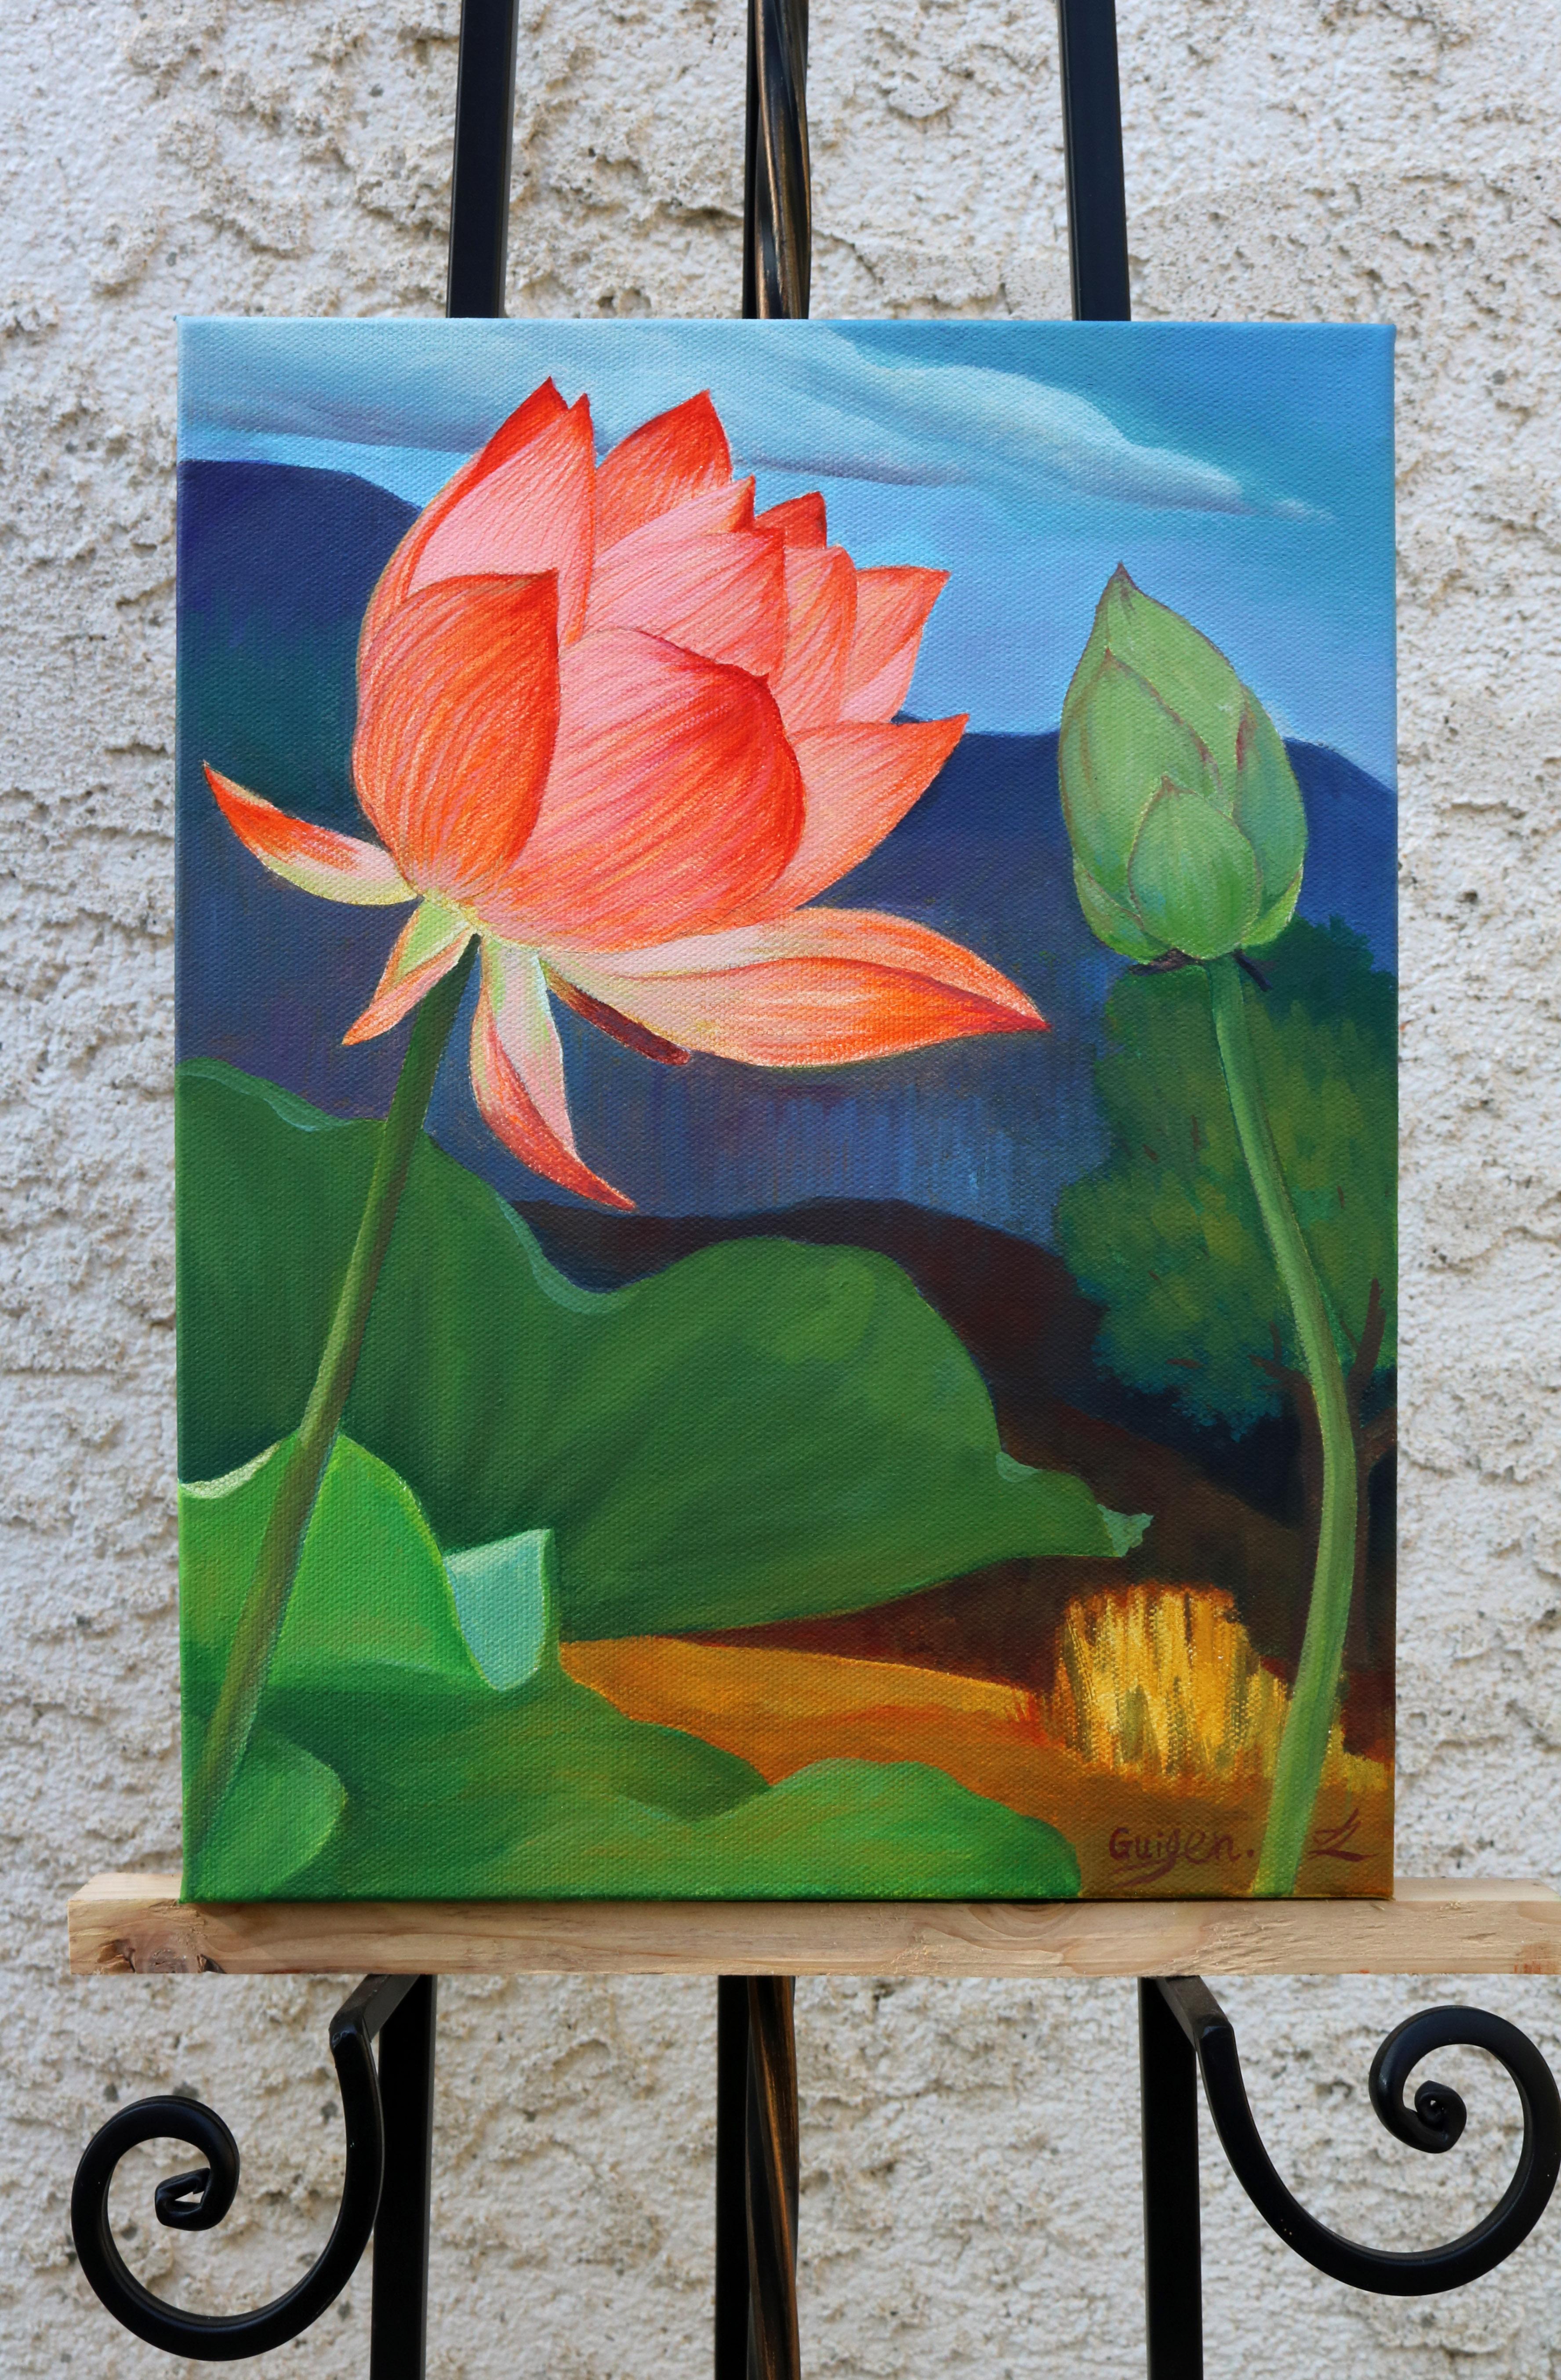 <p>Commentaires de l'artiste<br>L'artiste Guigen Zha représente un lotus rouge dodu en train de fleurir face à un bourgeon en développement. Il peint dans son style distinct de réalisme qui préserve un sens de l'introspection fantaisiste. Les fleurs